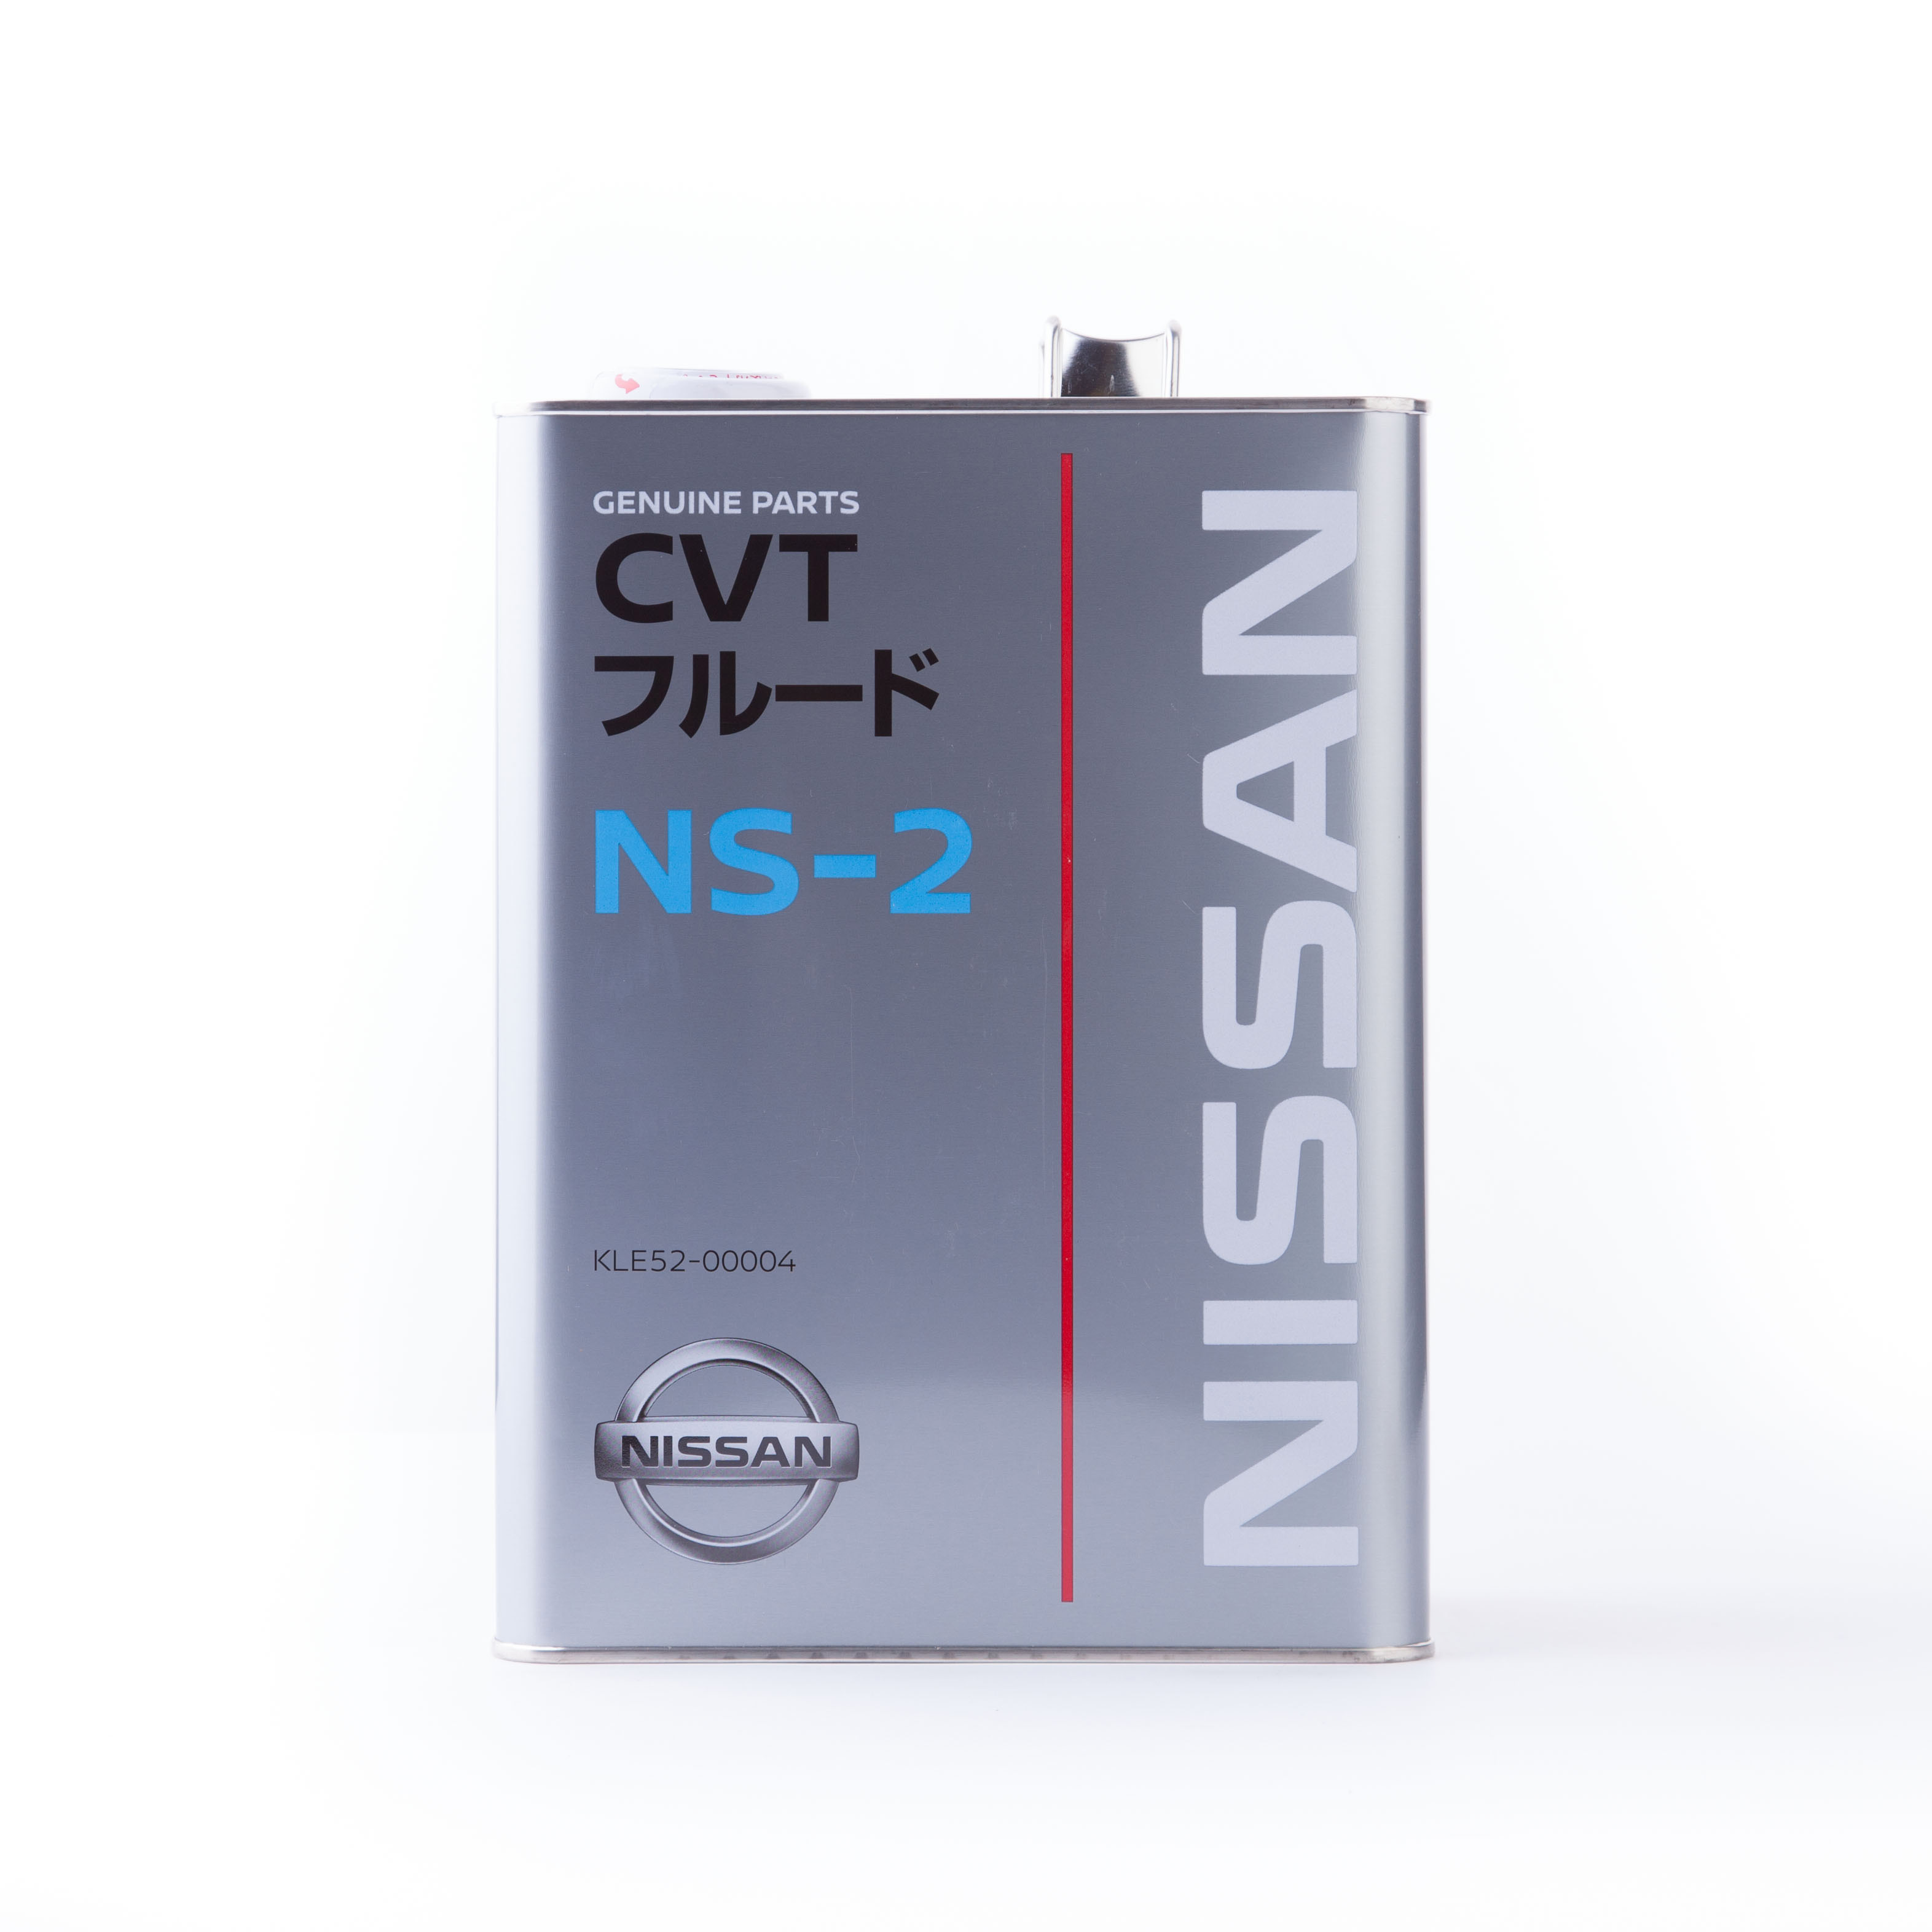 Масло трансмиссионное nissan cvt. Nissan CVT NS-2 kle52-00004 4л. Nissan ATF ns2. Nissan NS-2 CVT Fluid. Nissan CVT Fluid NS-2 (kle52-00004).